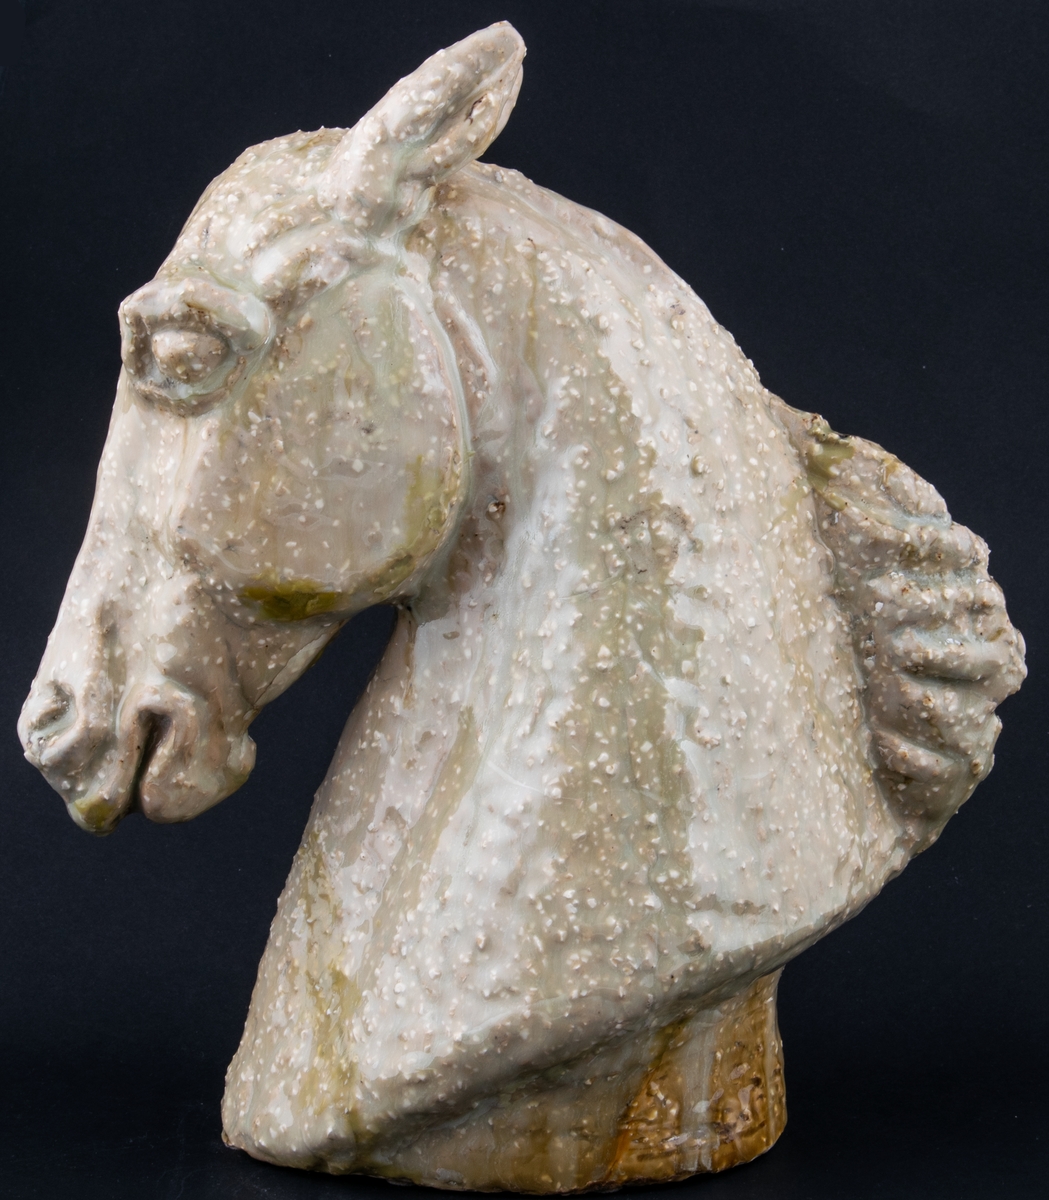 Modellerad figurin i stengods, föreställande ett hästhuvud. Utförd som ateljéproduktion av Lillemor Mannerheim 1956 eller 1957 som förlaga till den formgjutna figurinen Hästhuvud som producerades av Gefle 1957-1964.